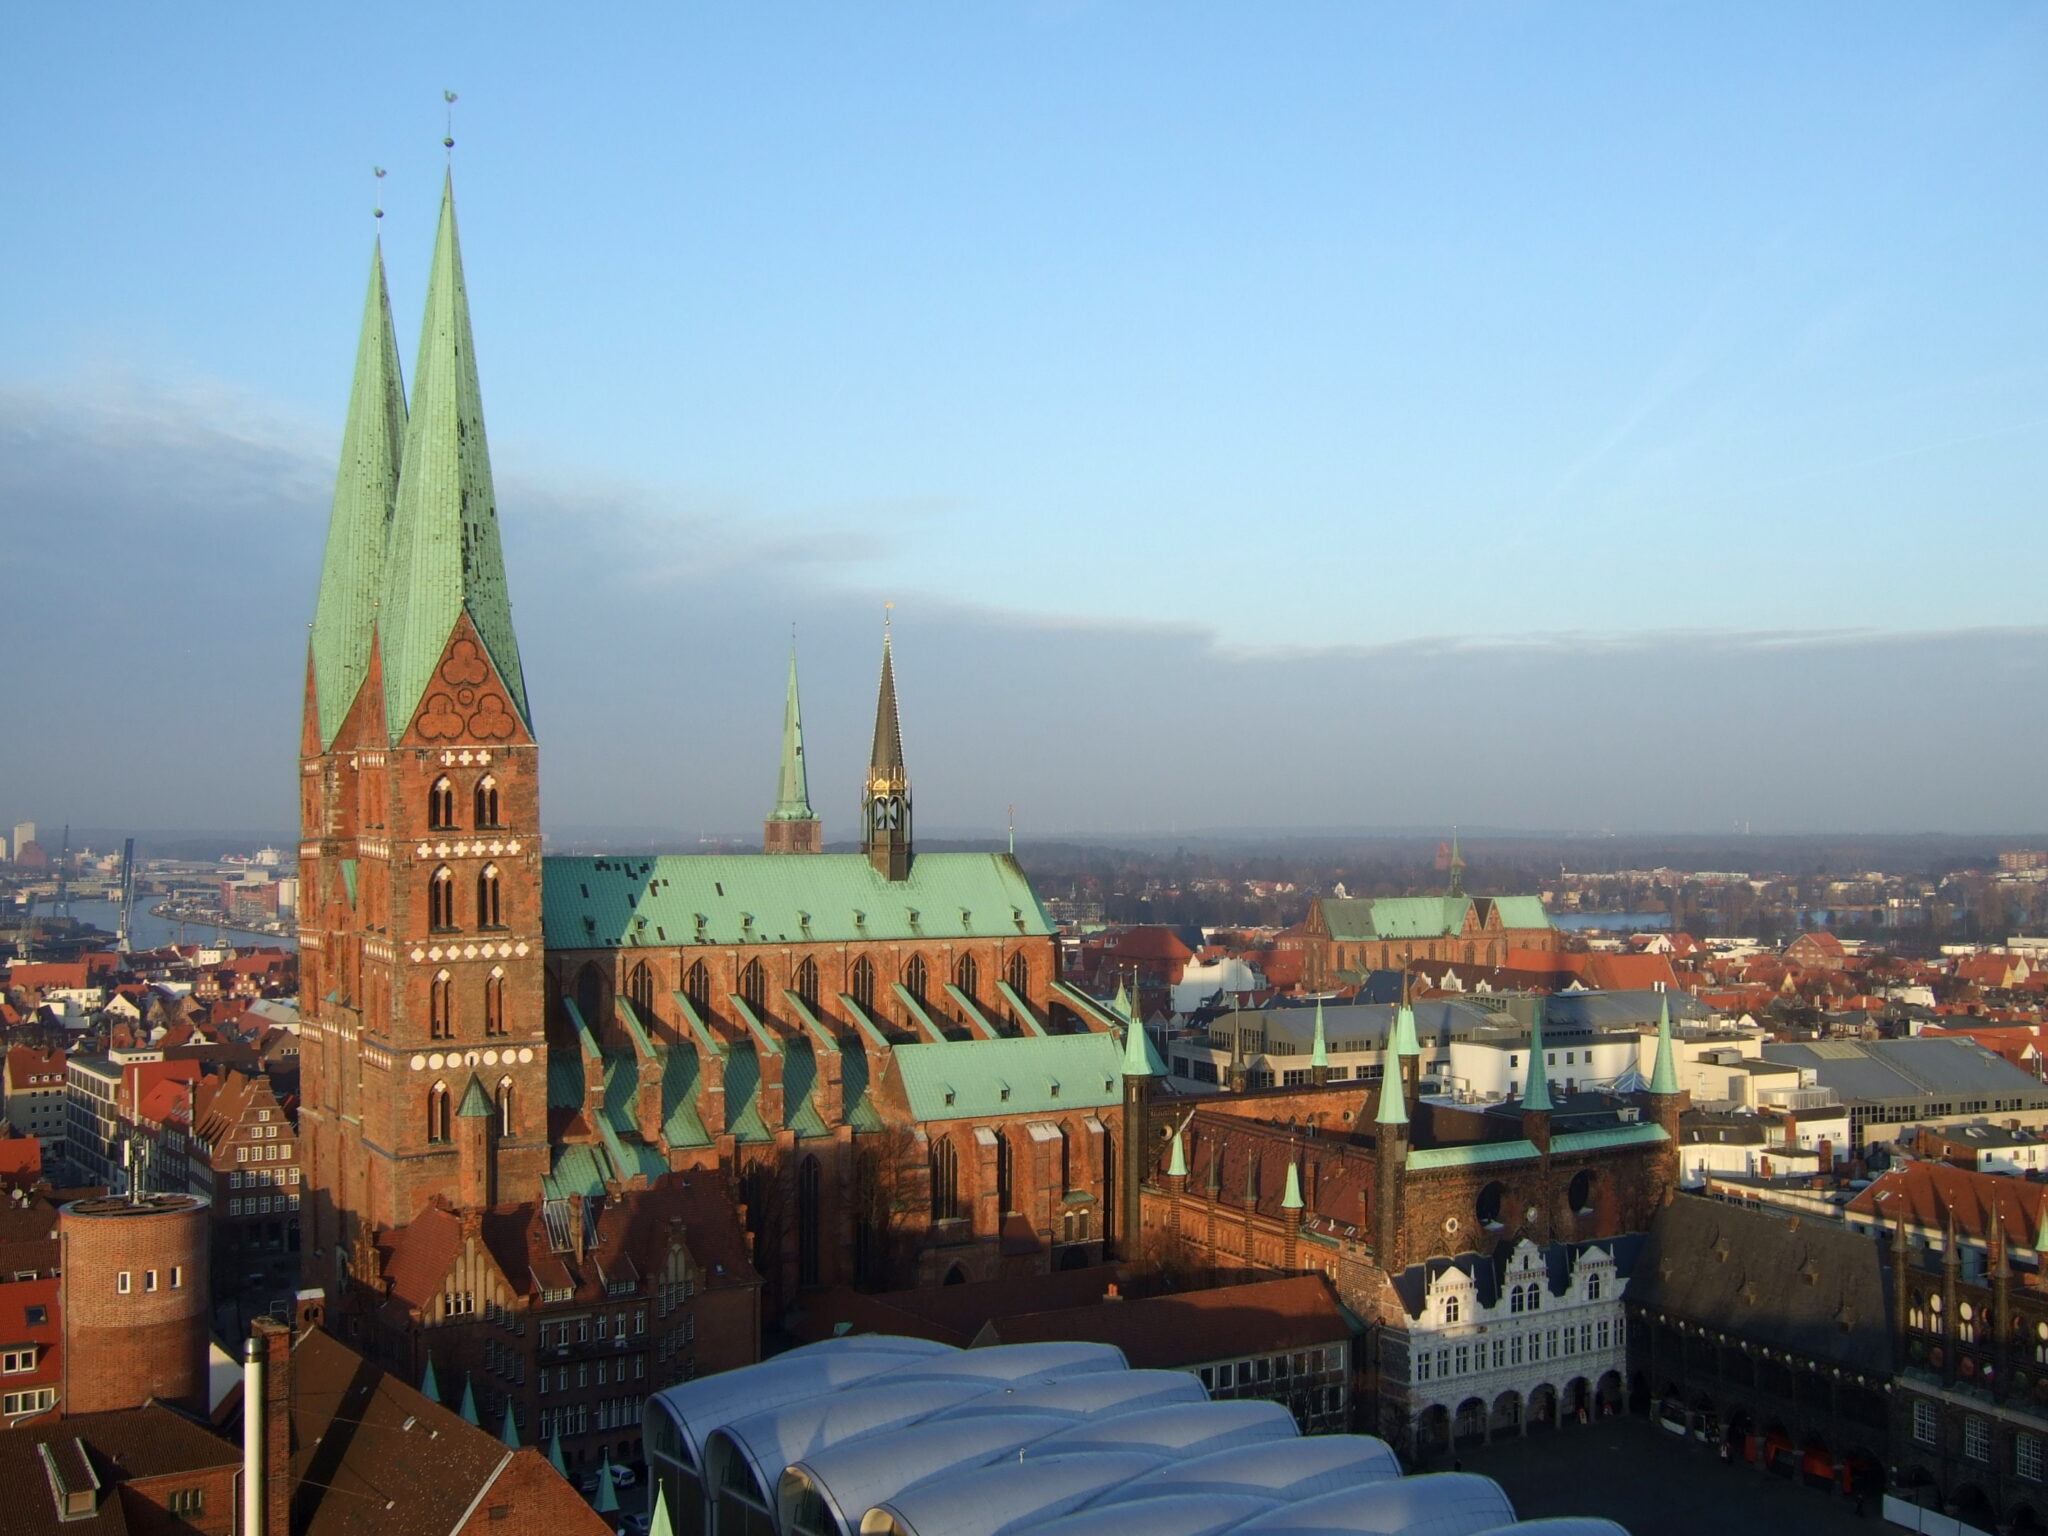 St. Marien zu Lübeck